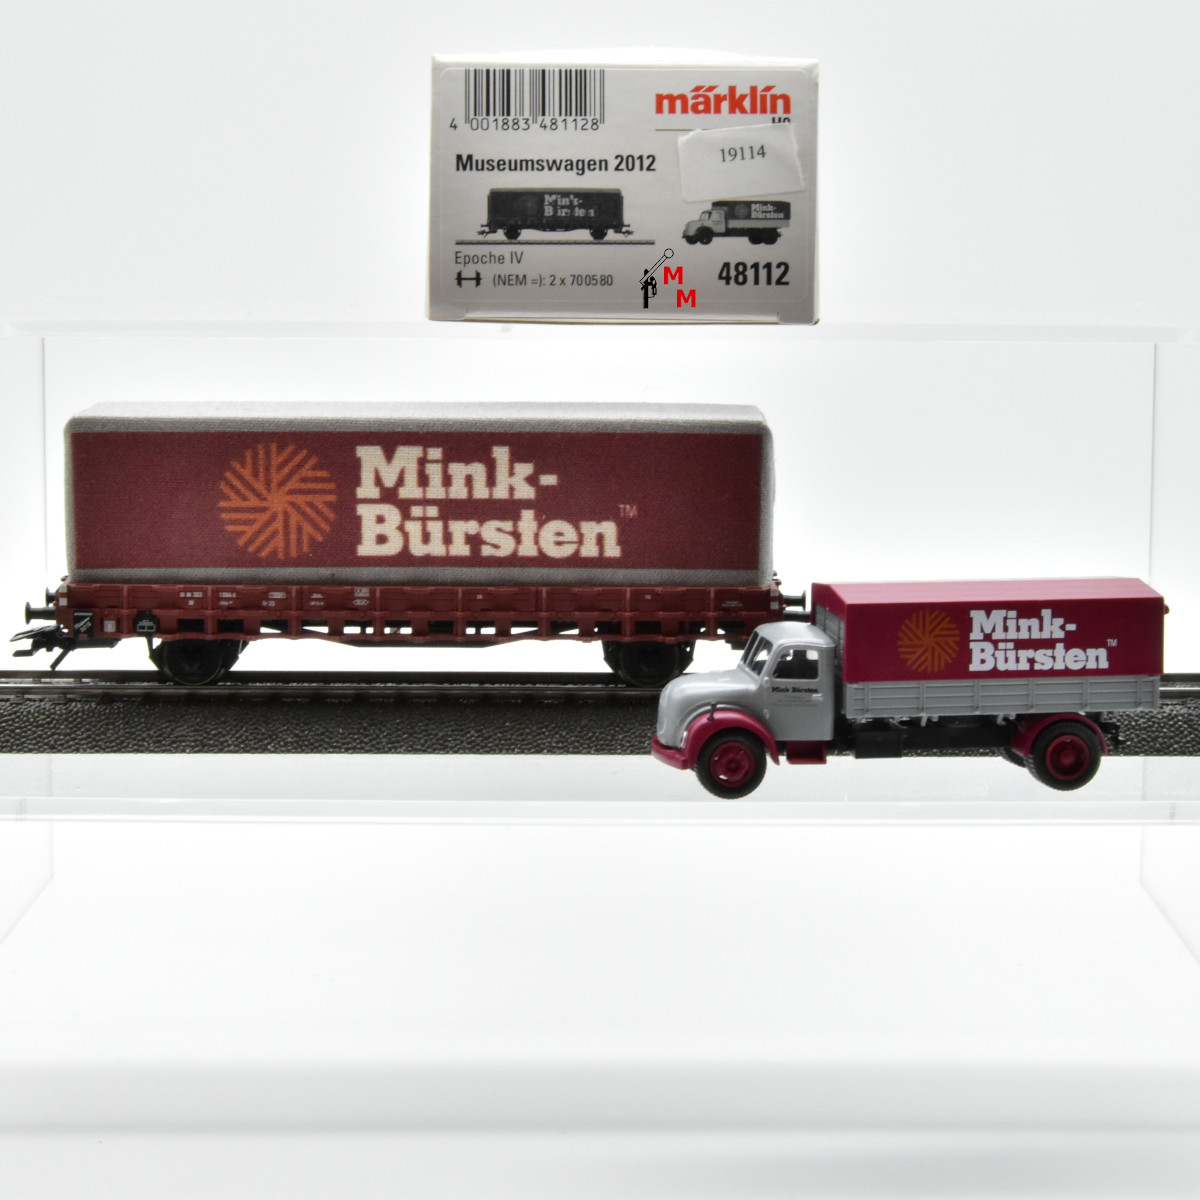 Märklin 48112 (2012701) Museumswagen 2012, (19114)